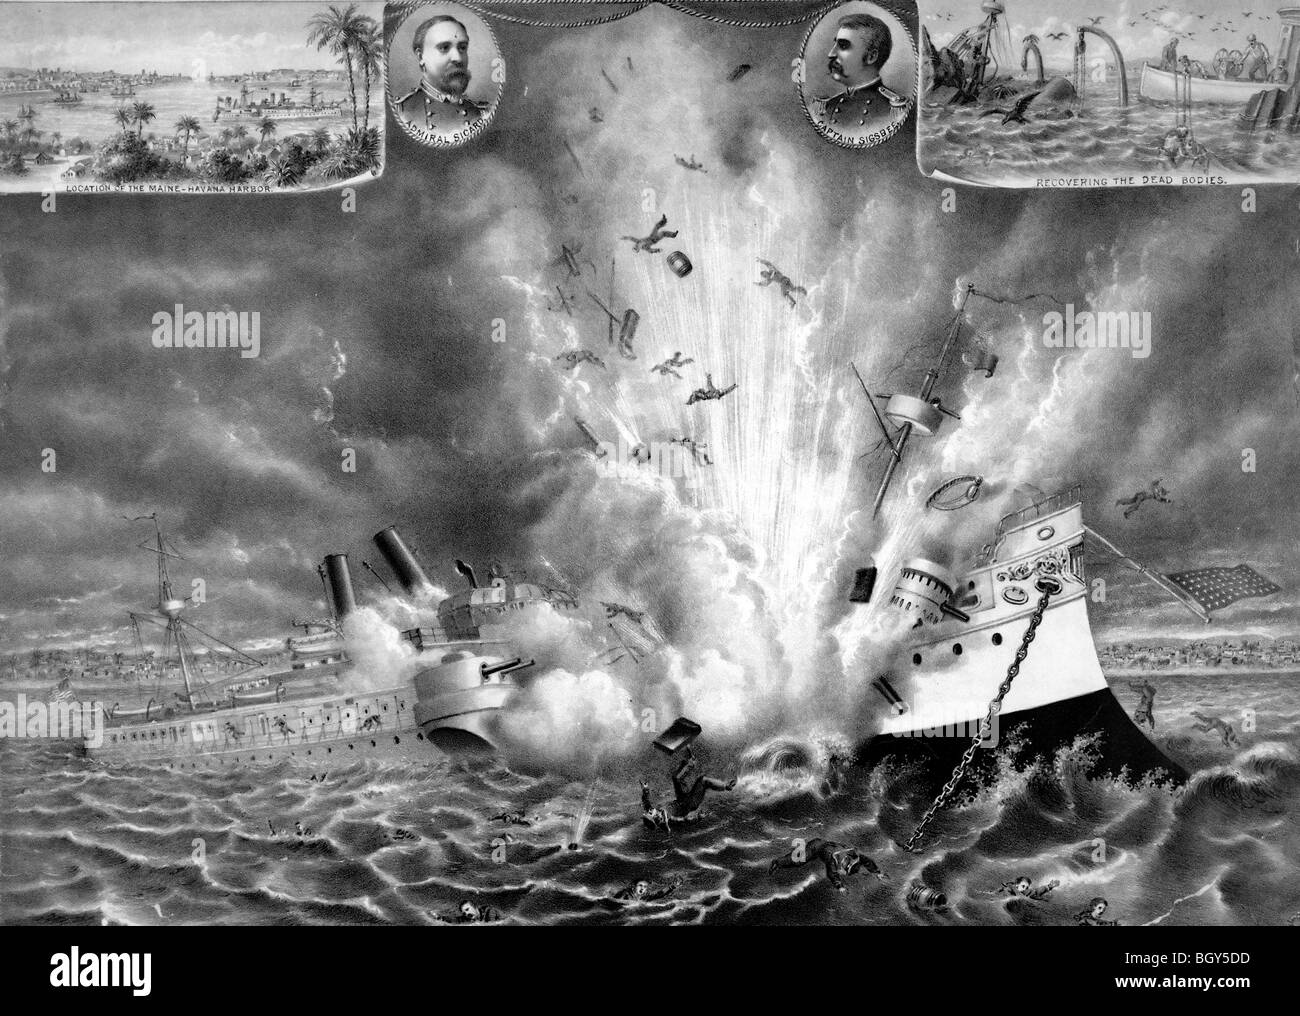 La destruction du cuirassé Maine dans le port de La Havane le 15 février 1898 Banque D'Images